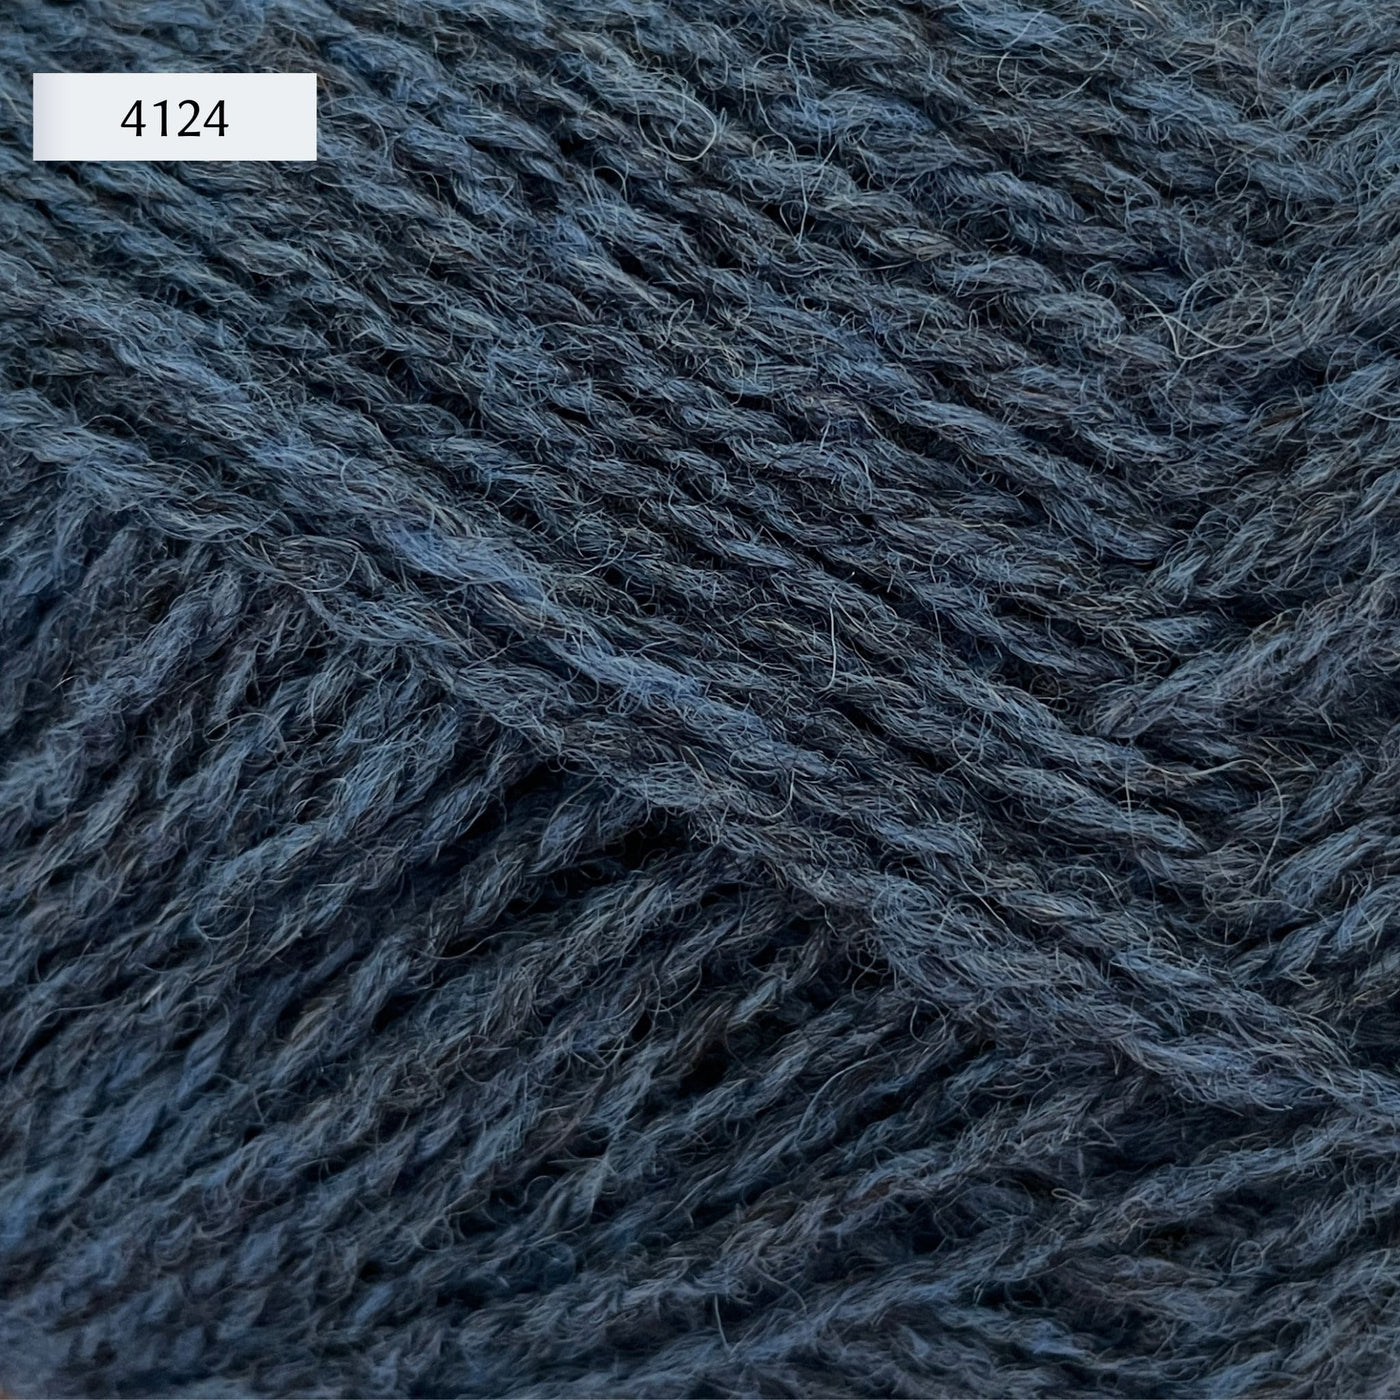 Rauma Finullgarn, a fingering/sport weight yarn, in color 4124, a heathered dark denim blue